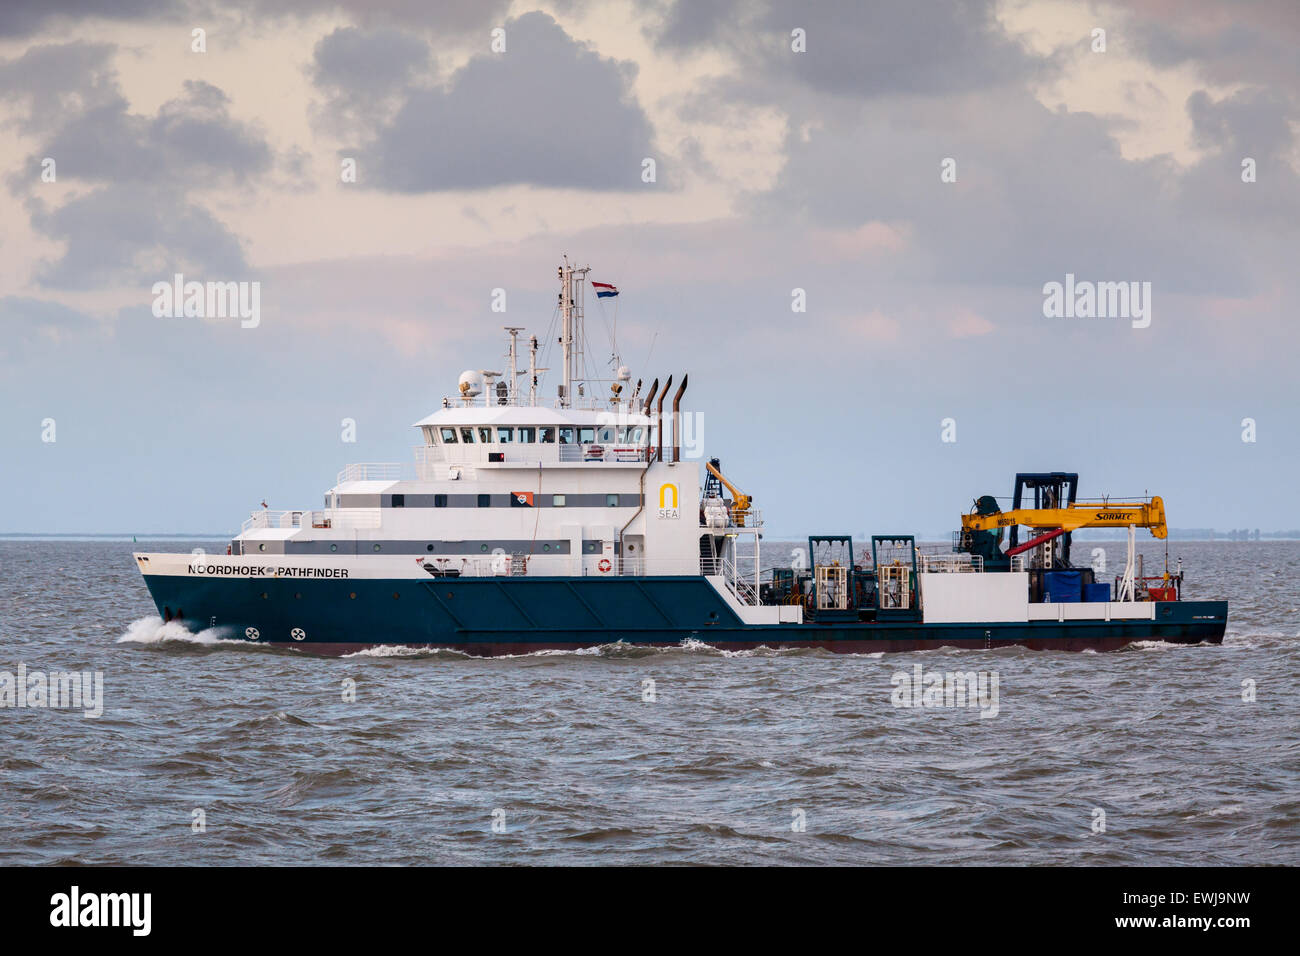 Offshore-Dive Unterstützung Schiff, Noordhoek Pathfinder, durchführen UXO (Blindgänger) Tauchen Operationen Stockfoto